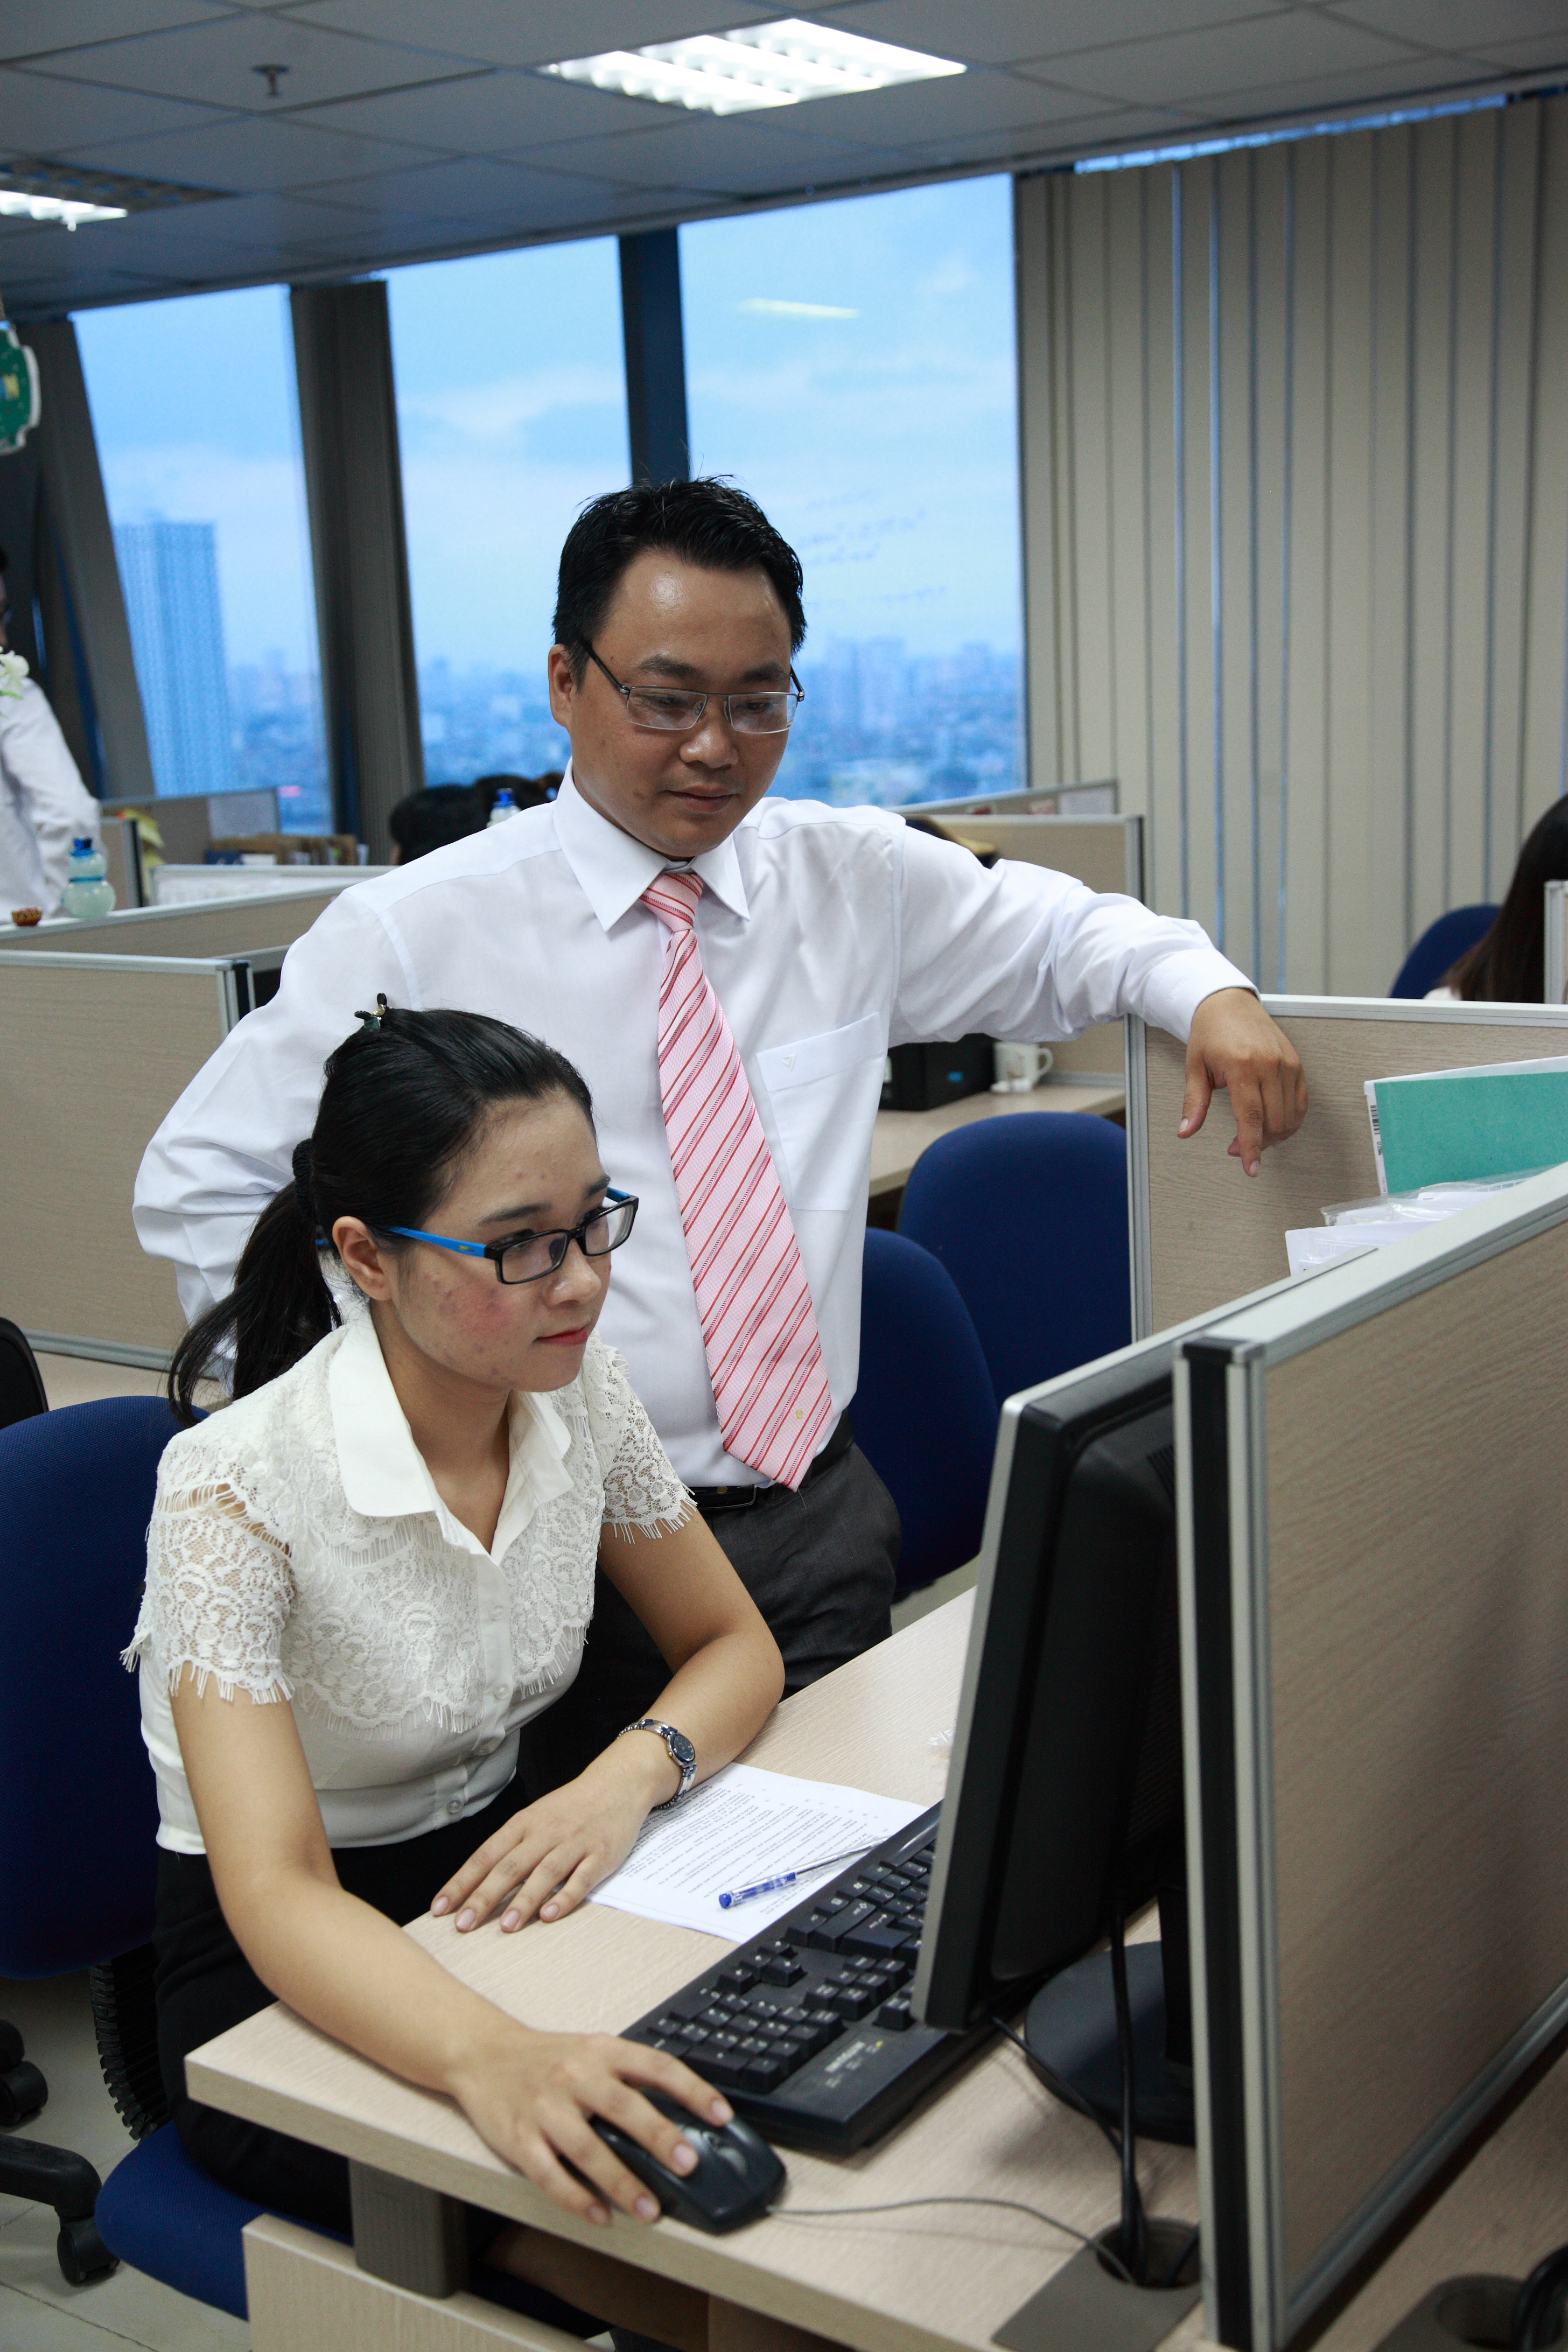  Luật sư Đặng Thành Chung – Công ty Luật An Ninh (Đoàn Luật sư TP Hà Nội) đã có ý kiến trao đổi với phóng viên về Dự án chung cư Gia Phú Land.